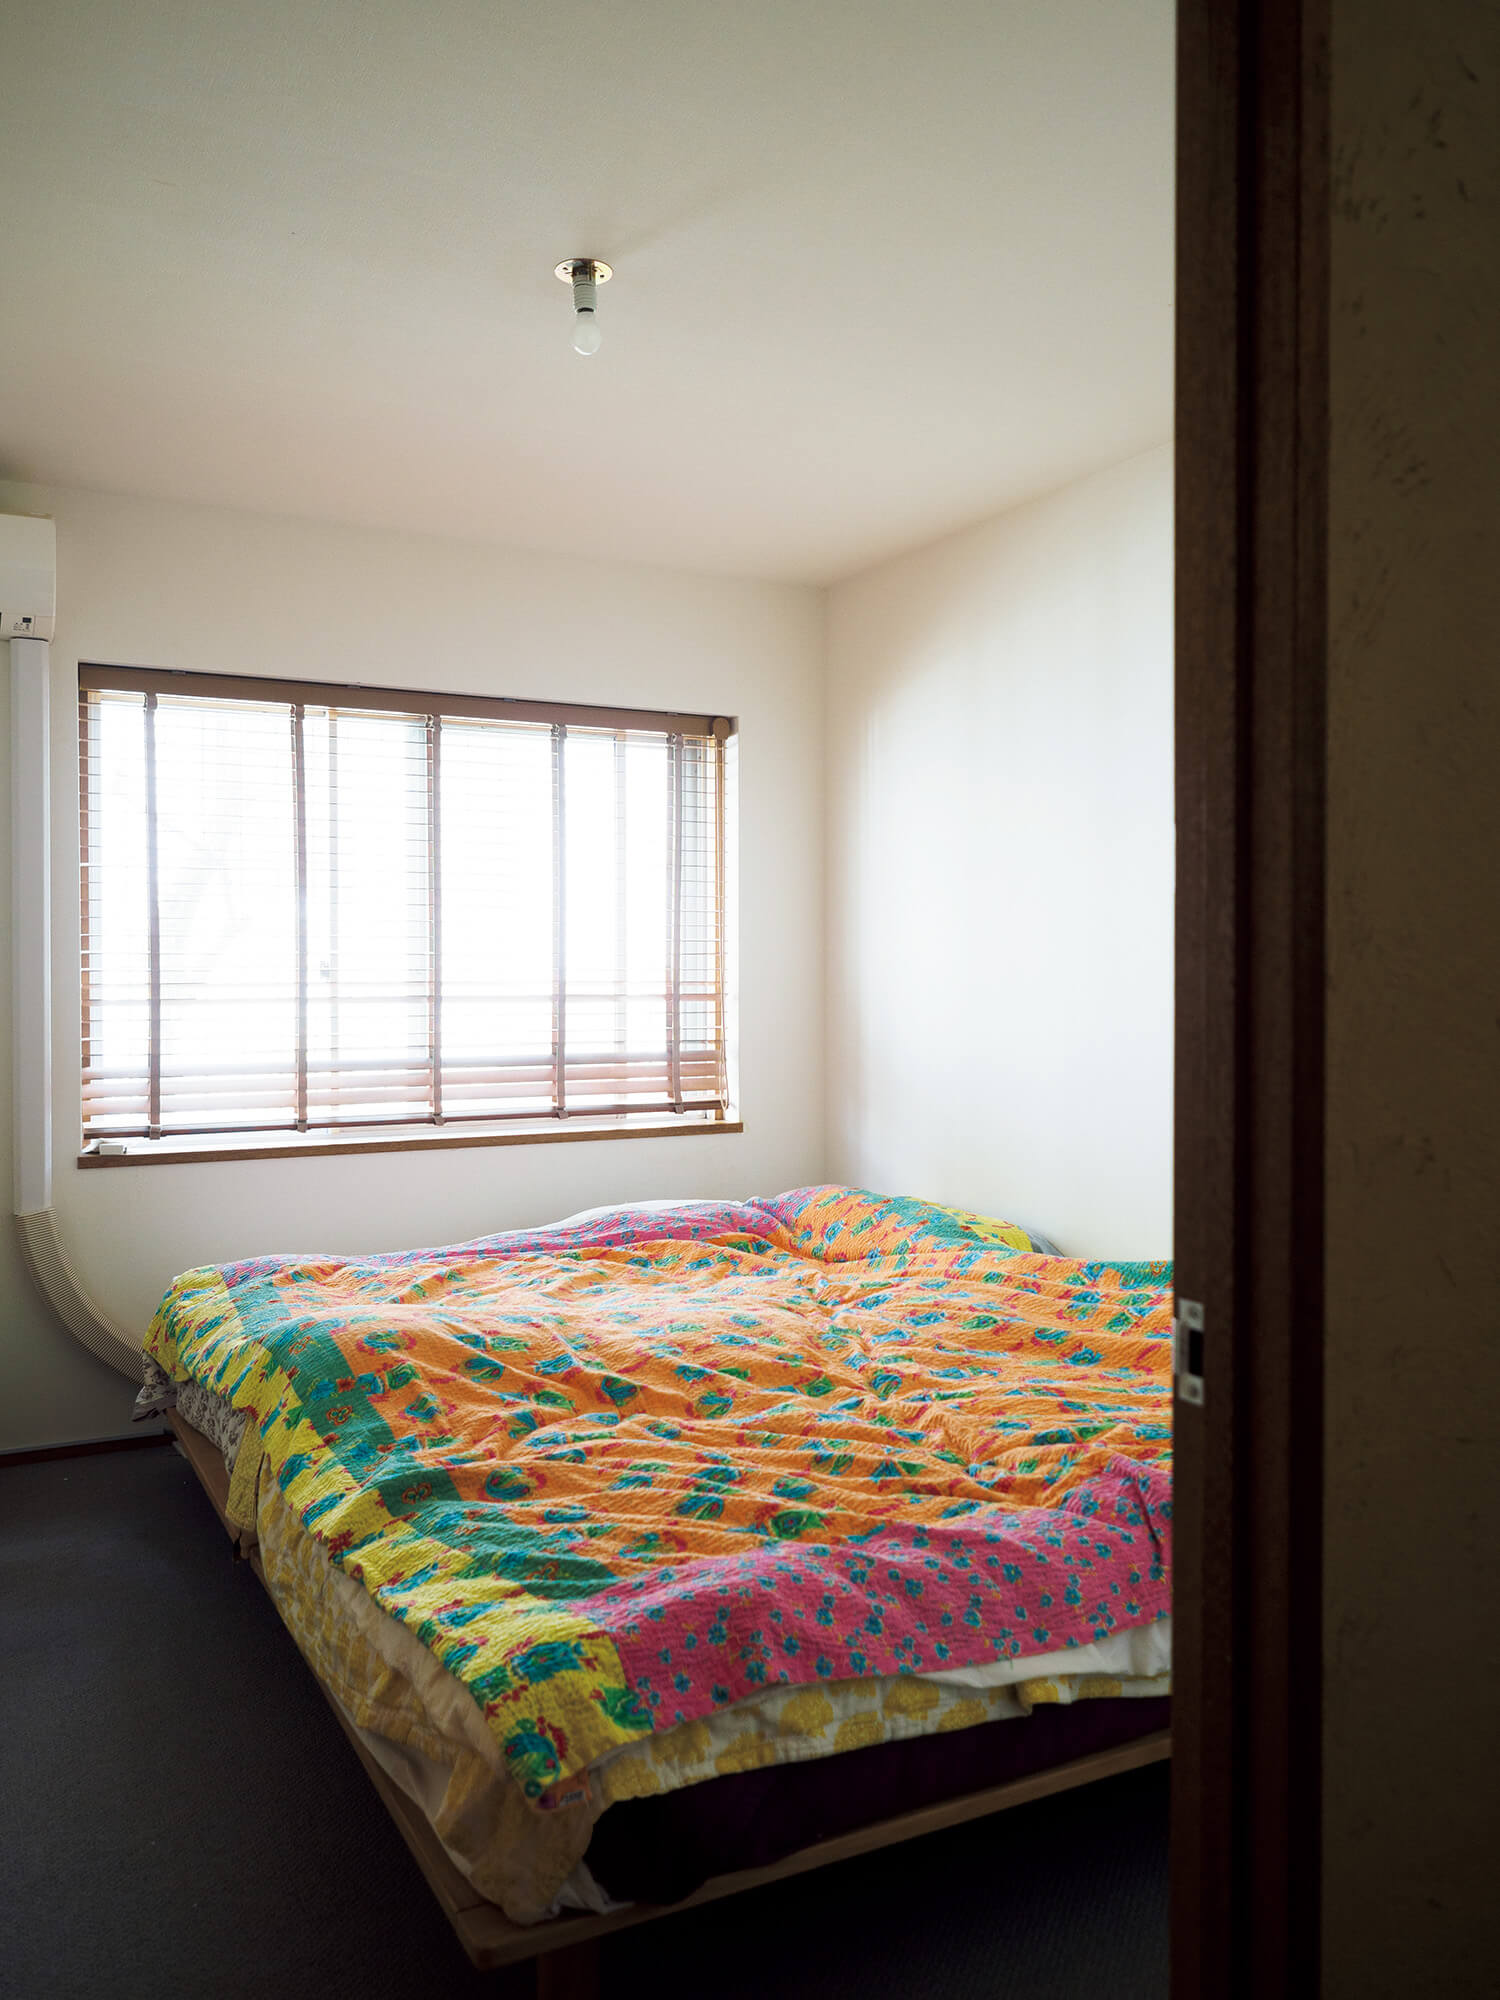 神奈川 分棟型の集合住宅 寝室